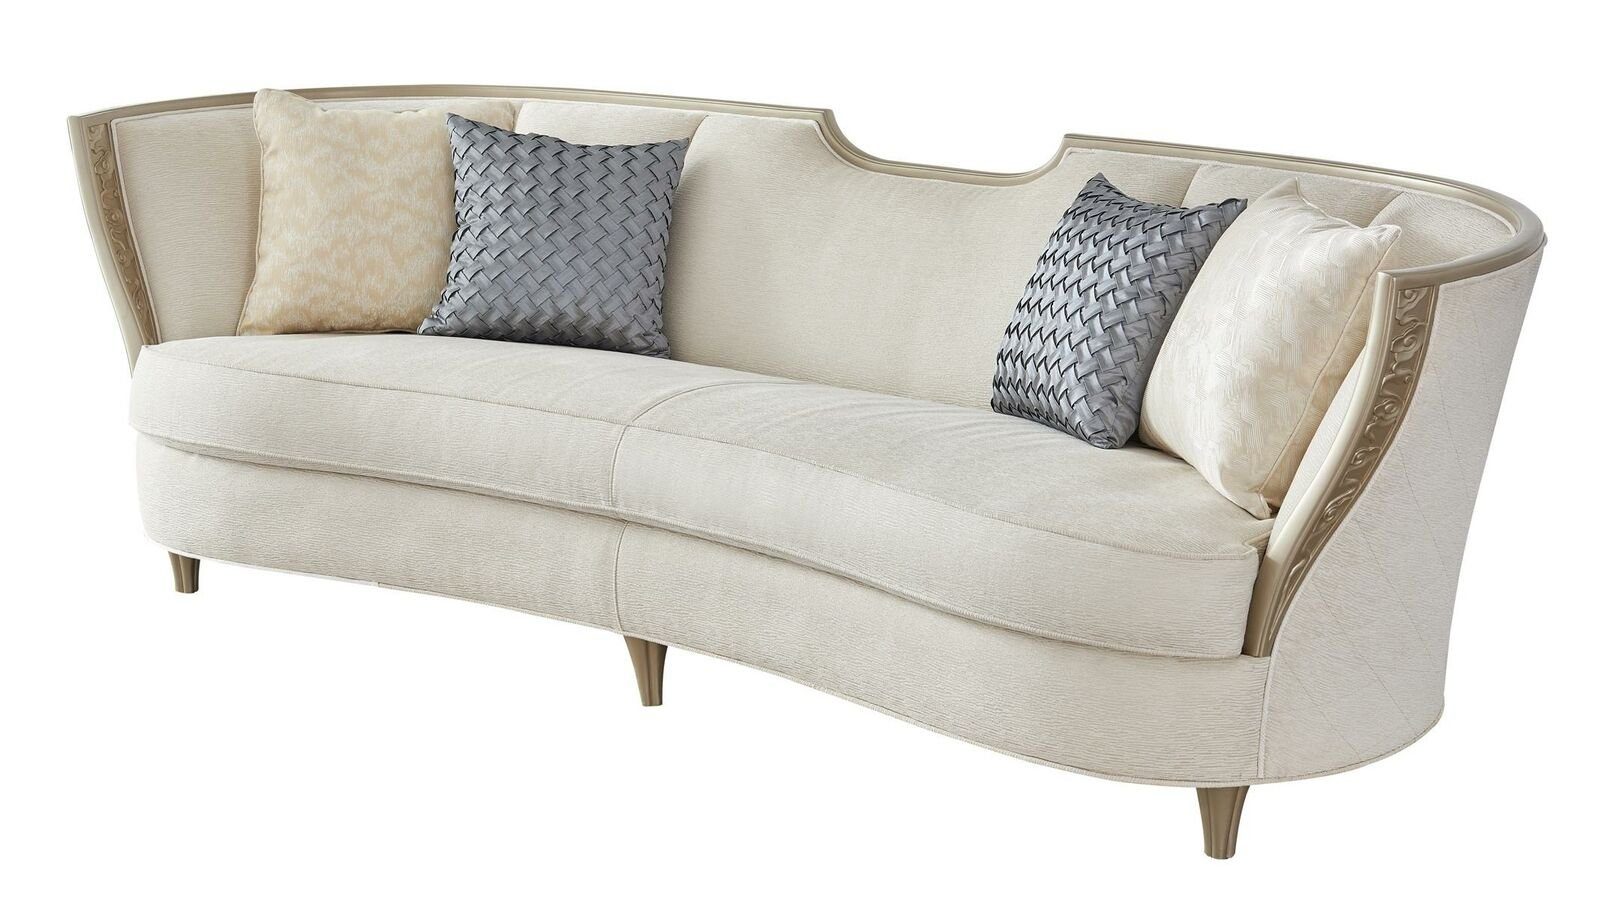 JVmoebel Sofa Stilvolle Beige Sofagarnitur 3+1 Sitzer Polstermöbel Moderne Couch, Made in Europe